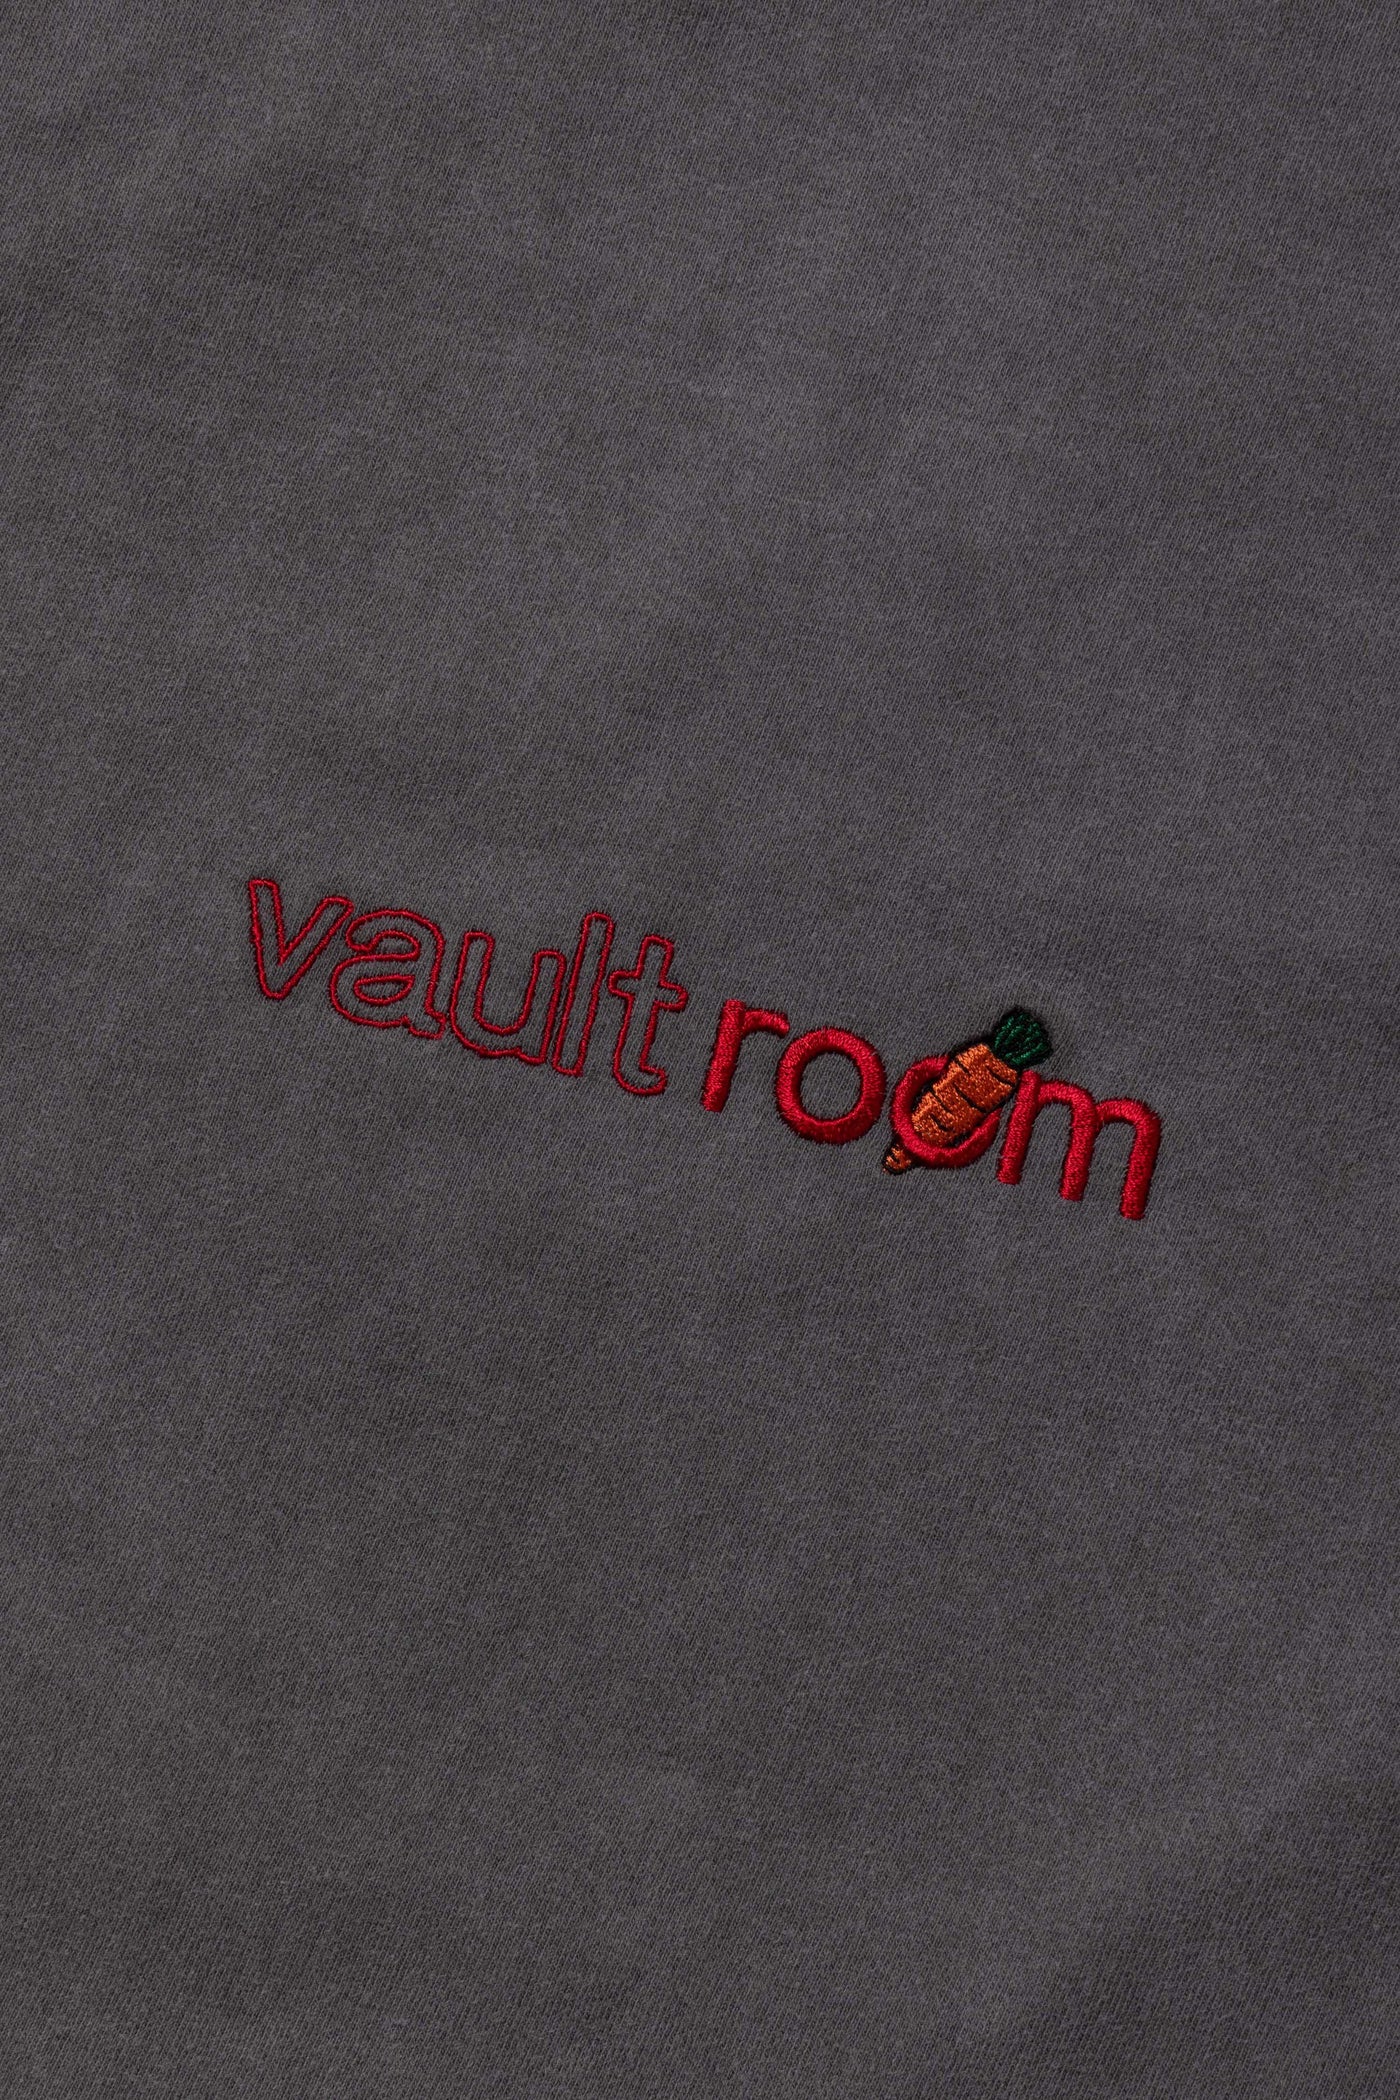 vaultroom SKULL PEKORA TEE XL CHARCOALカラーグレー